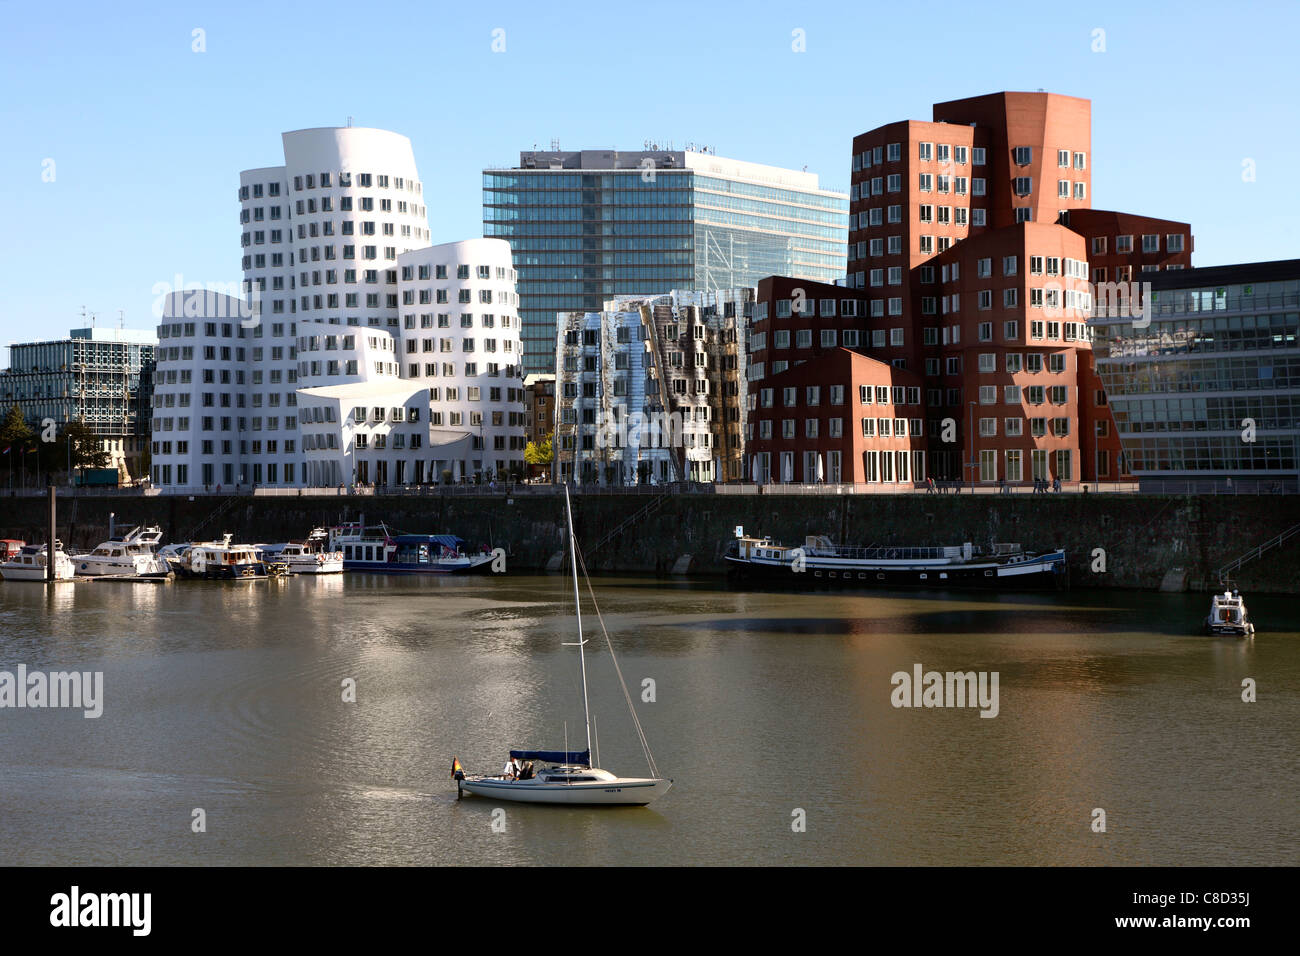 Ciudad de Düsseldorf, Alemania. Centro de la ciudad, edificios de oficinas "Neuer Zollhof" por el arquitecto Frank O. Gehry. 'Medienhafen". Foto de stock